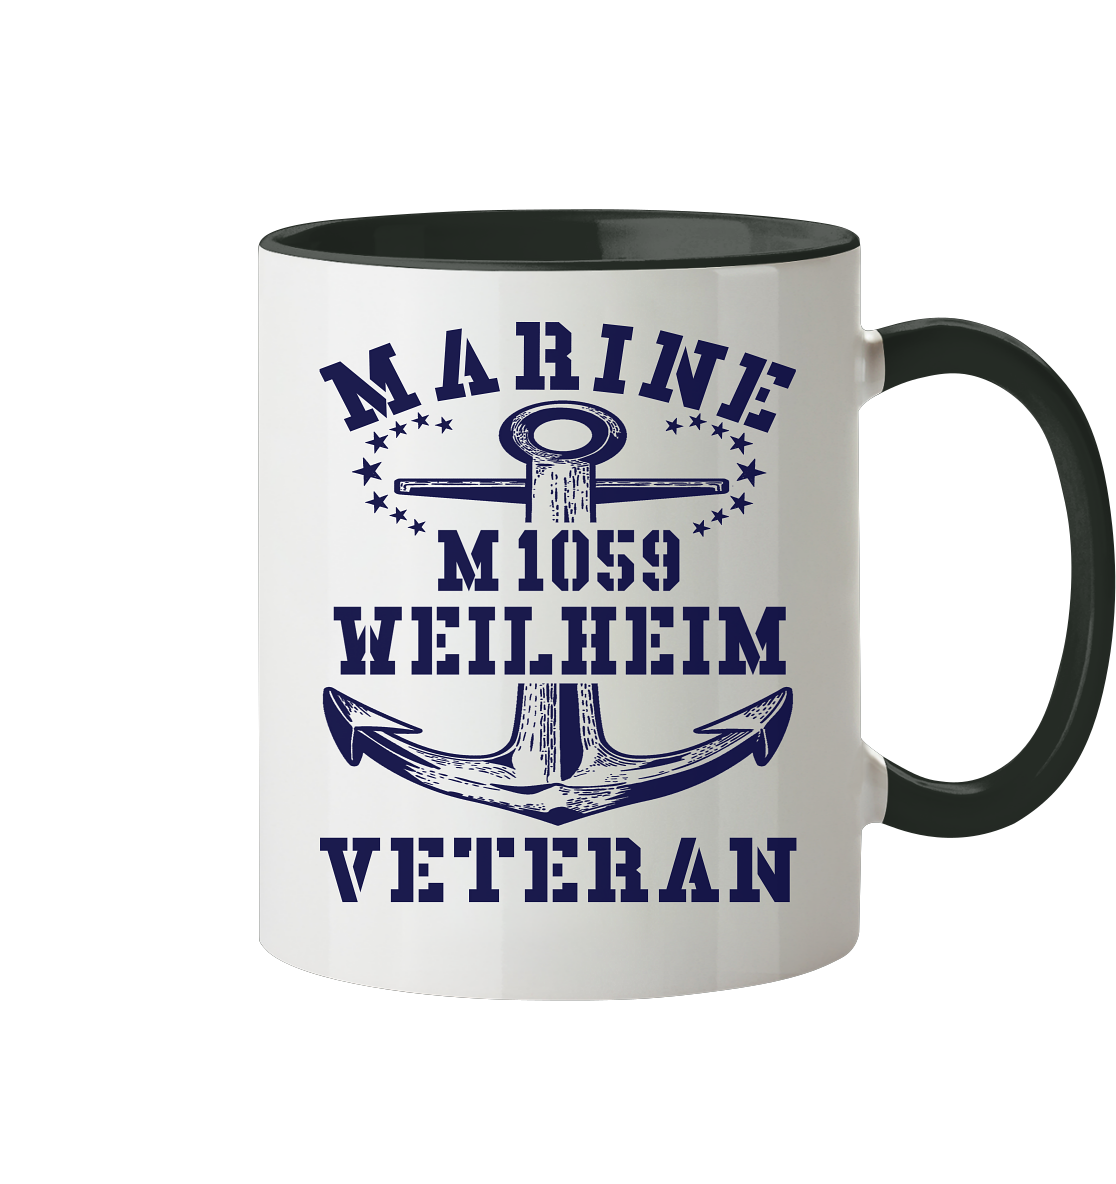 Mij.-Boot M1059 WEILHEIM Marine Veteran - Tasse zweifarbig